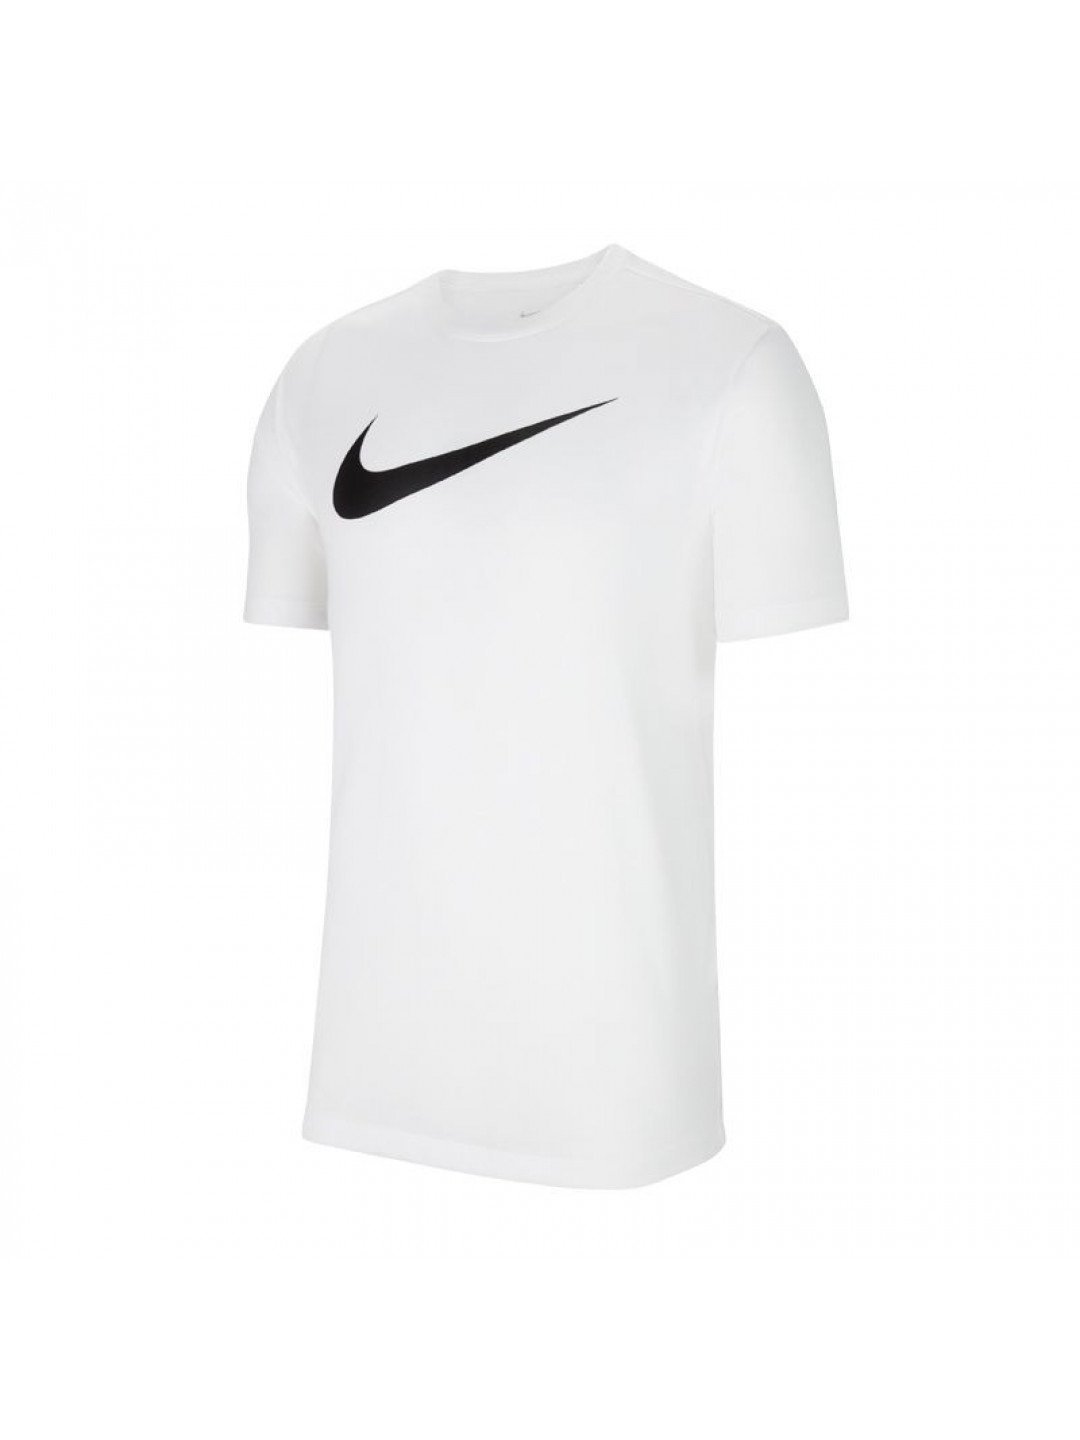 Pánské tričko Dri-FIT Park 20 M CW6936-100 – Nike XXXL